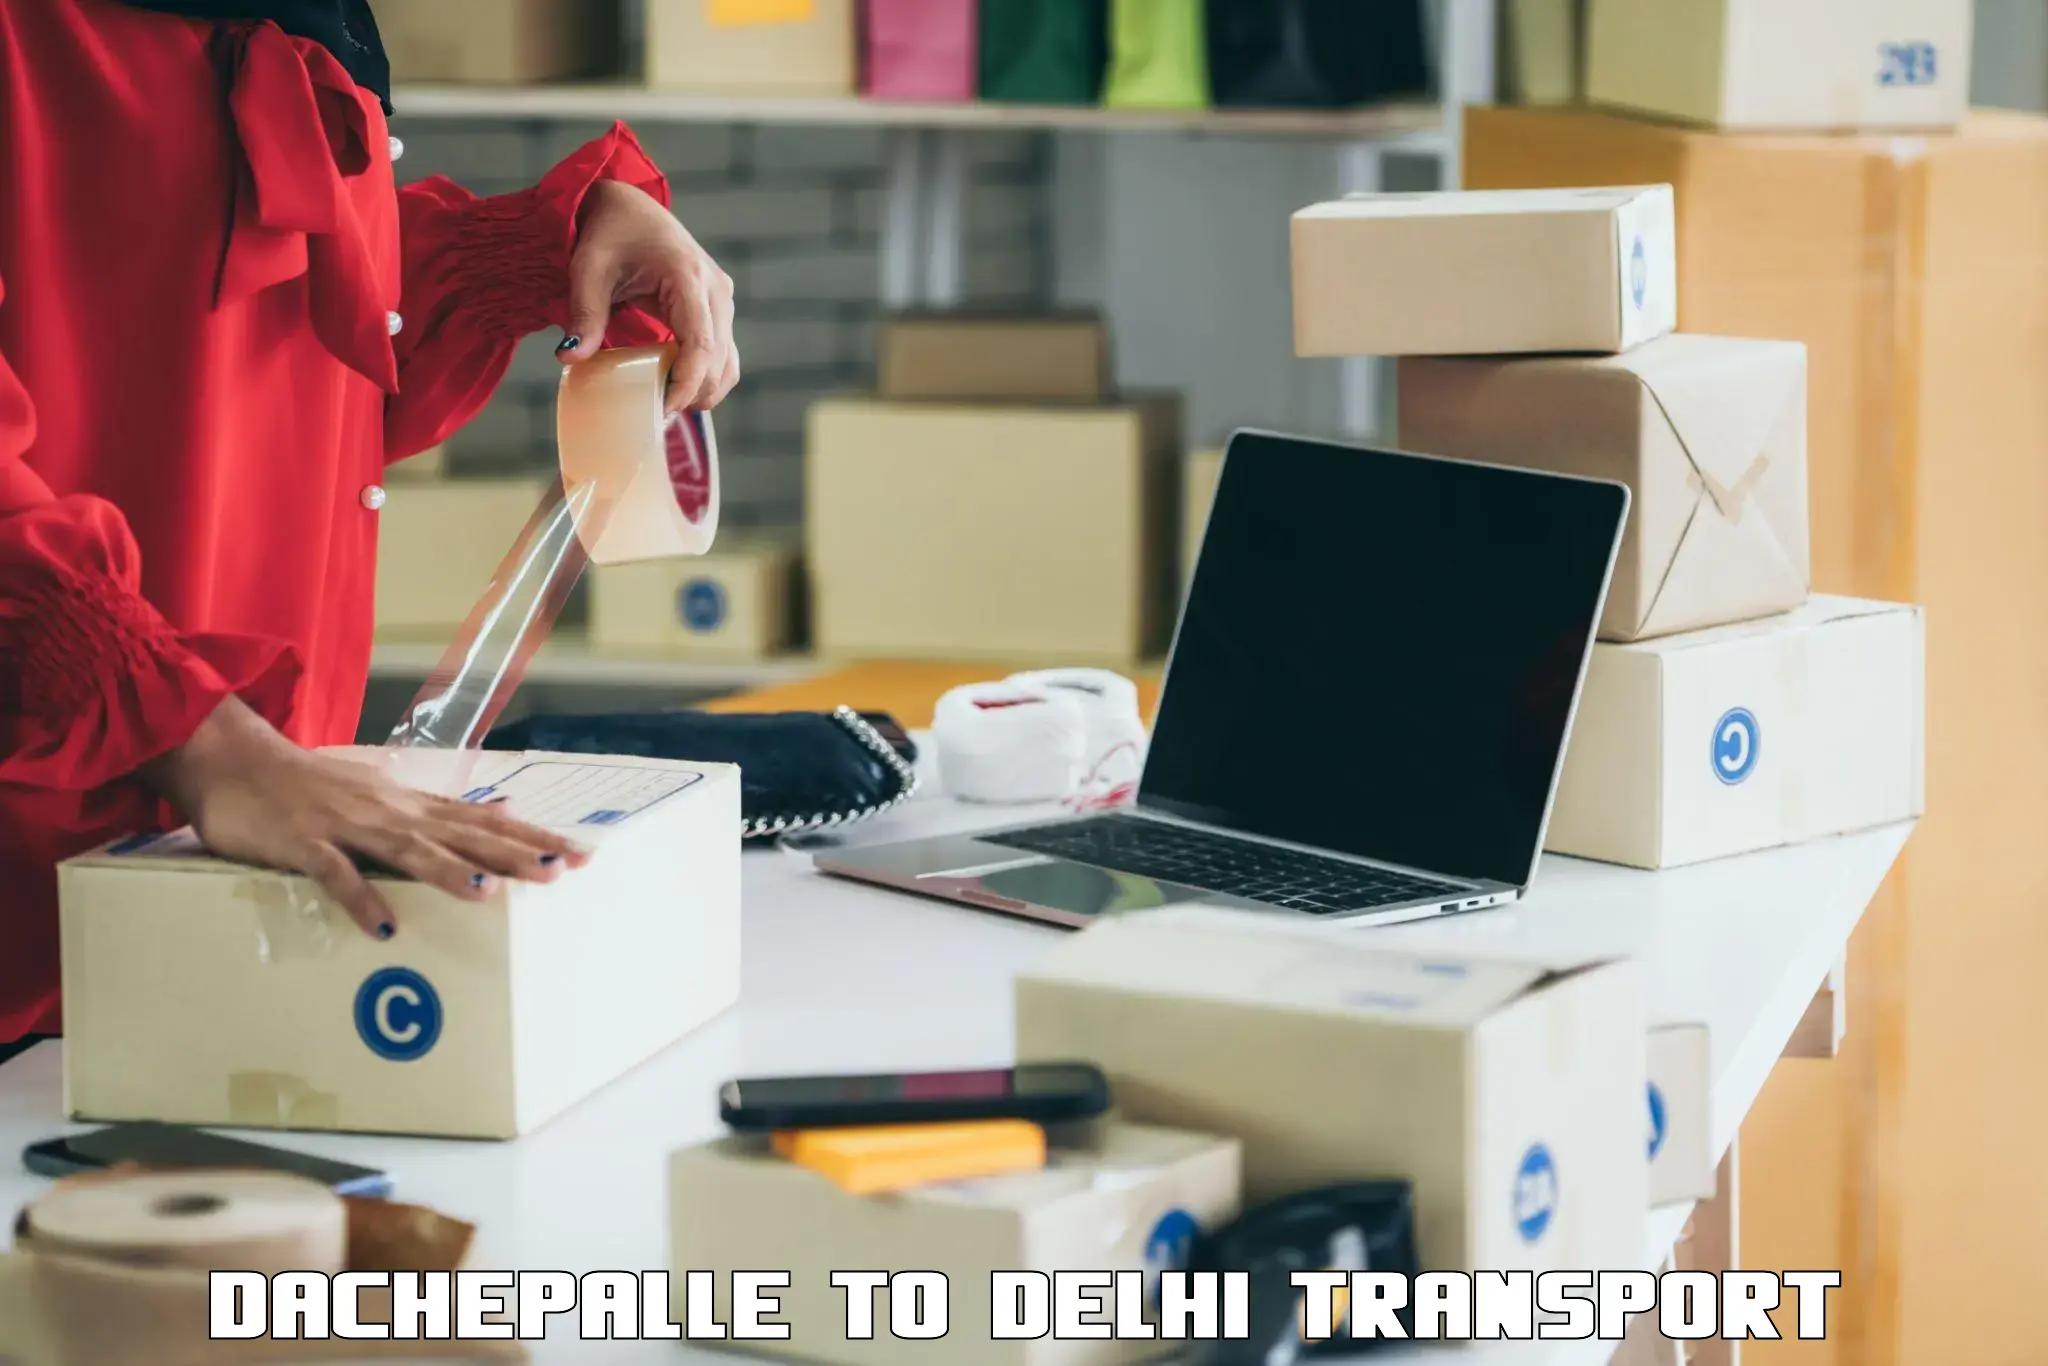 Express transport services Dachepalle to Jawaharlal Nehru University New Delhi